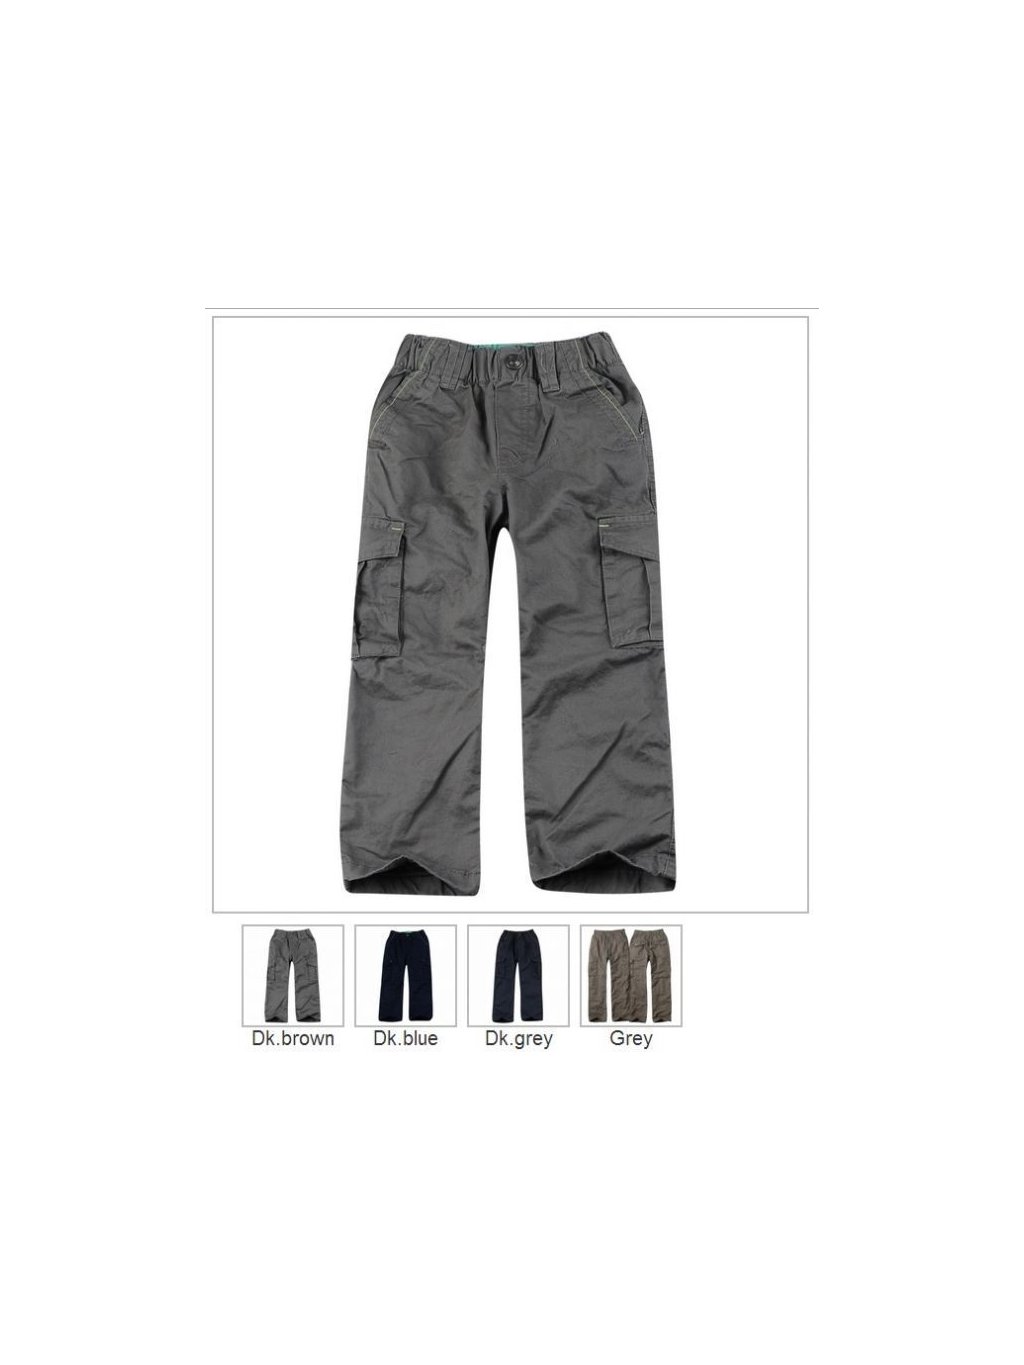 Kalhoty teplé dětské chlapecké bavlněné (98-128) GLO-STORY BSK-3931 hnědá 98